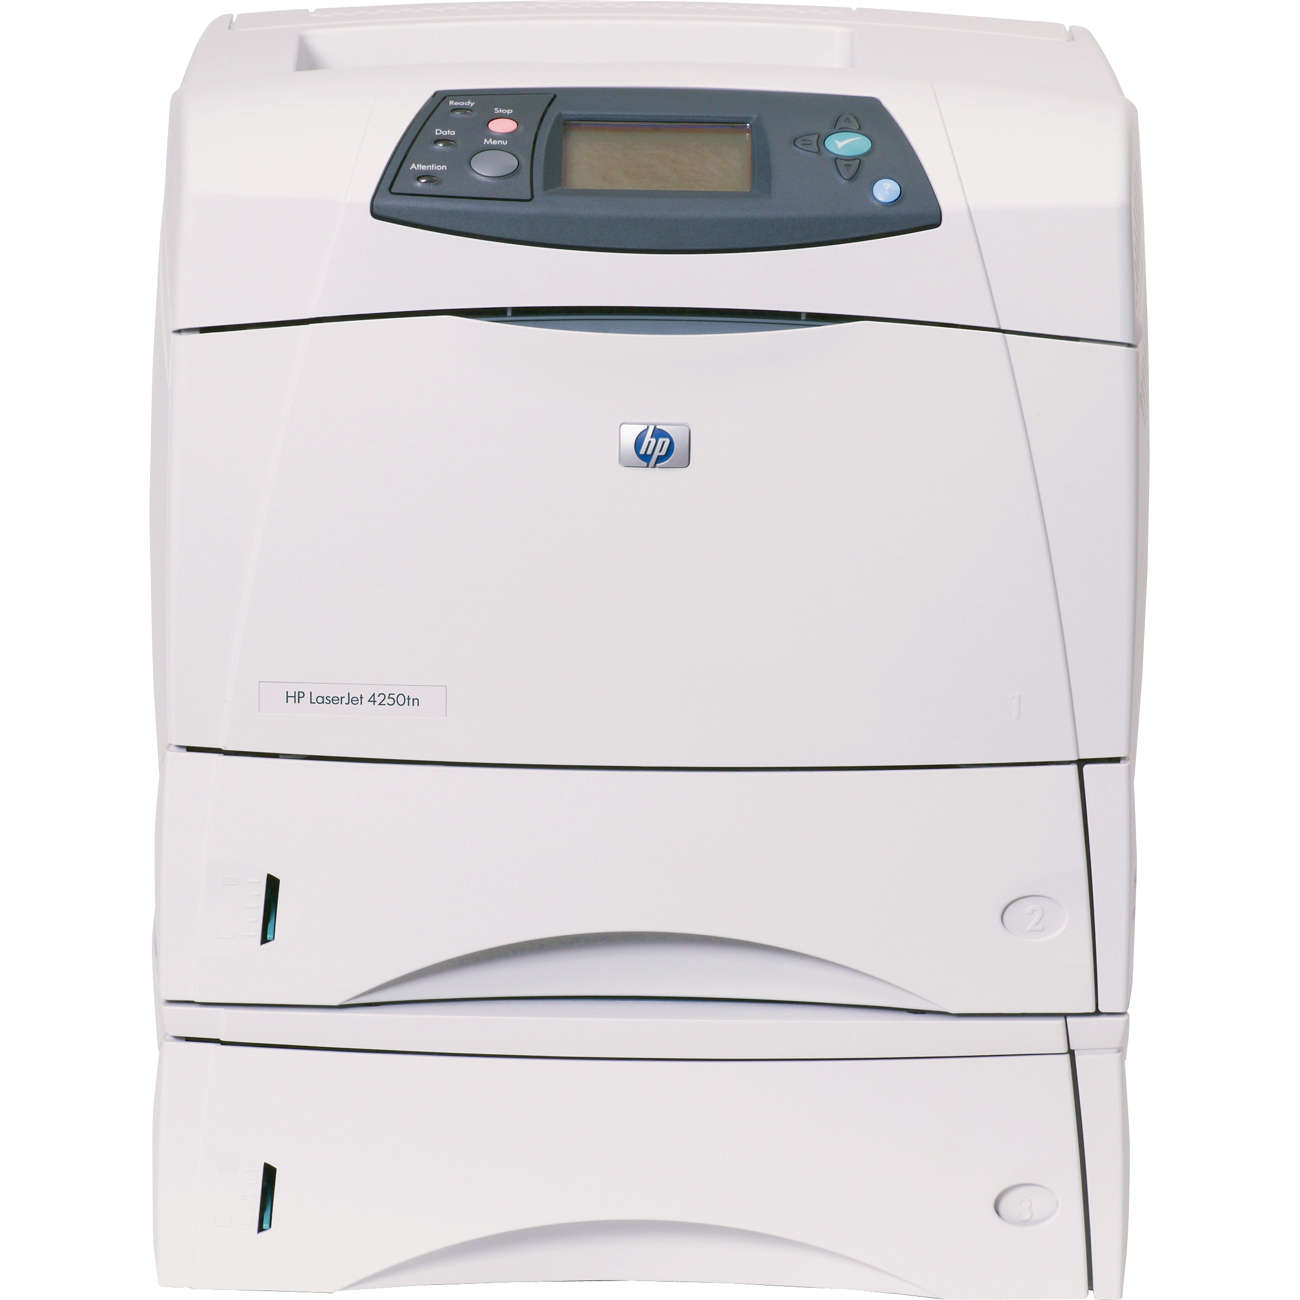 Ελαφρώς μεταχειρισμένος εκτυπωτής HP 4250tn - (HP4250TN)